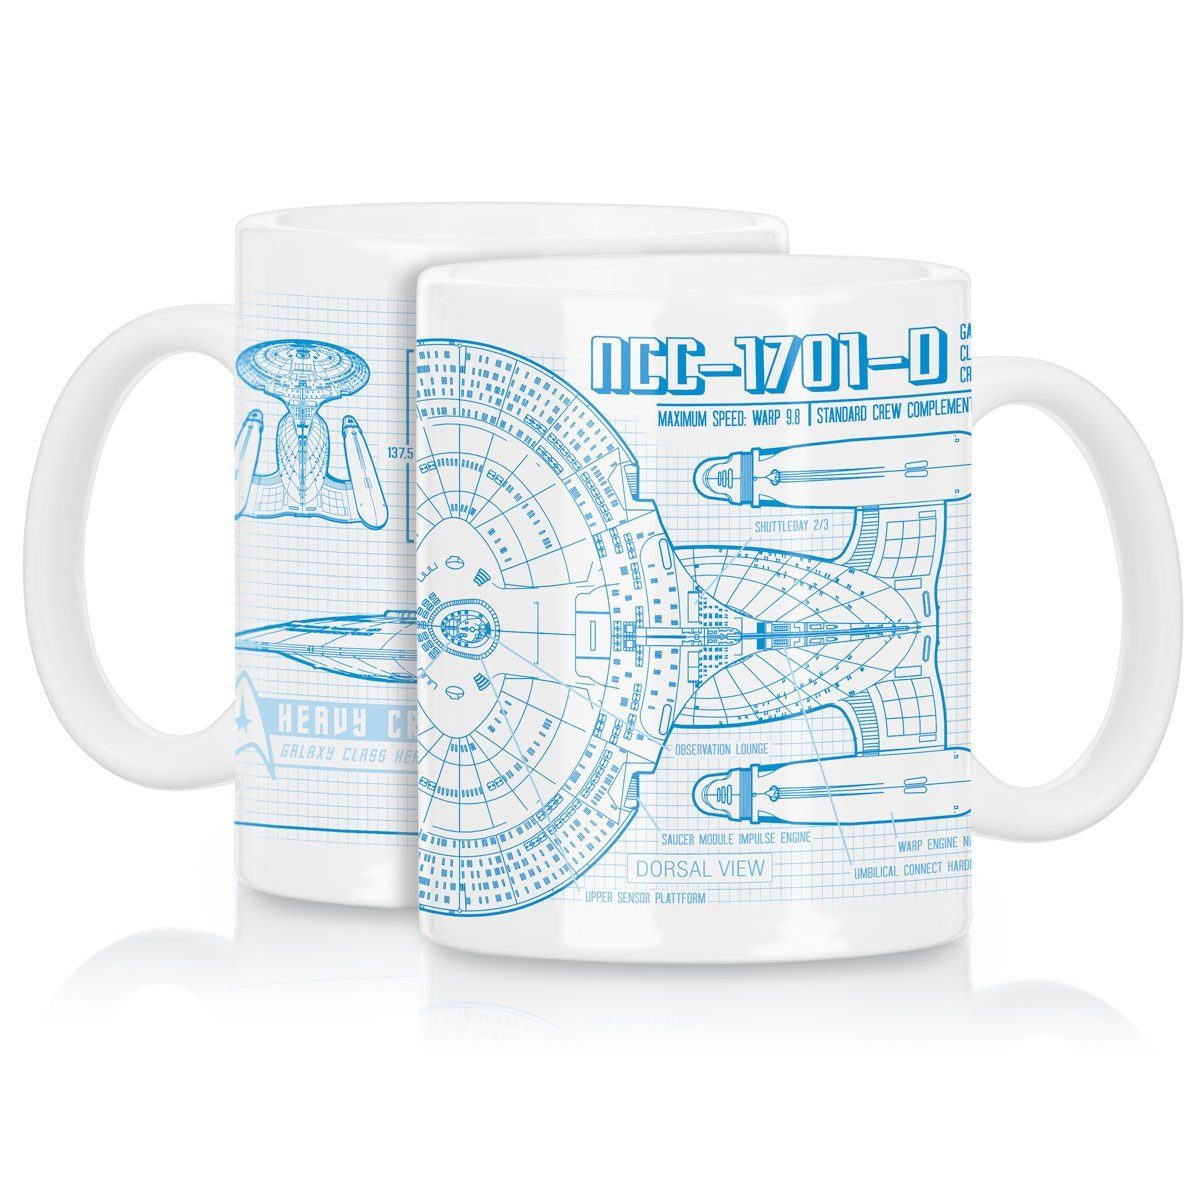 Tasse, das Keramik, style3 raumschiff trekkie trek Tasse nächste jahrhundert star NCC-1701-D Kaffeebecher enterprise